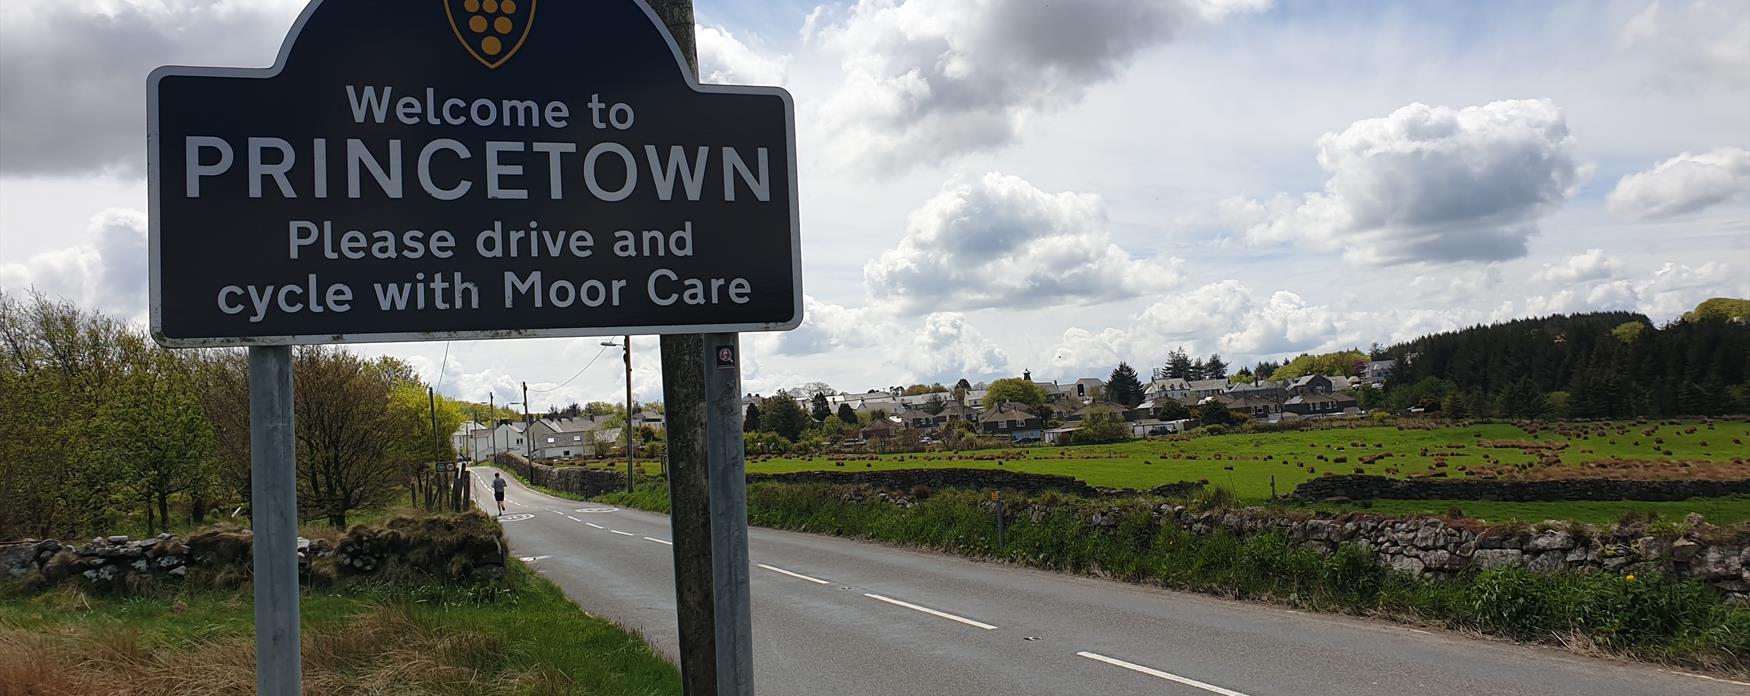 Princetown, Dartmoor